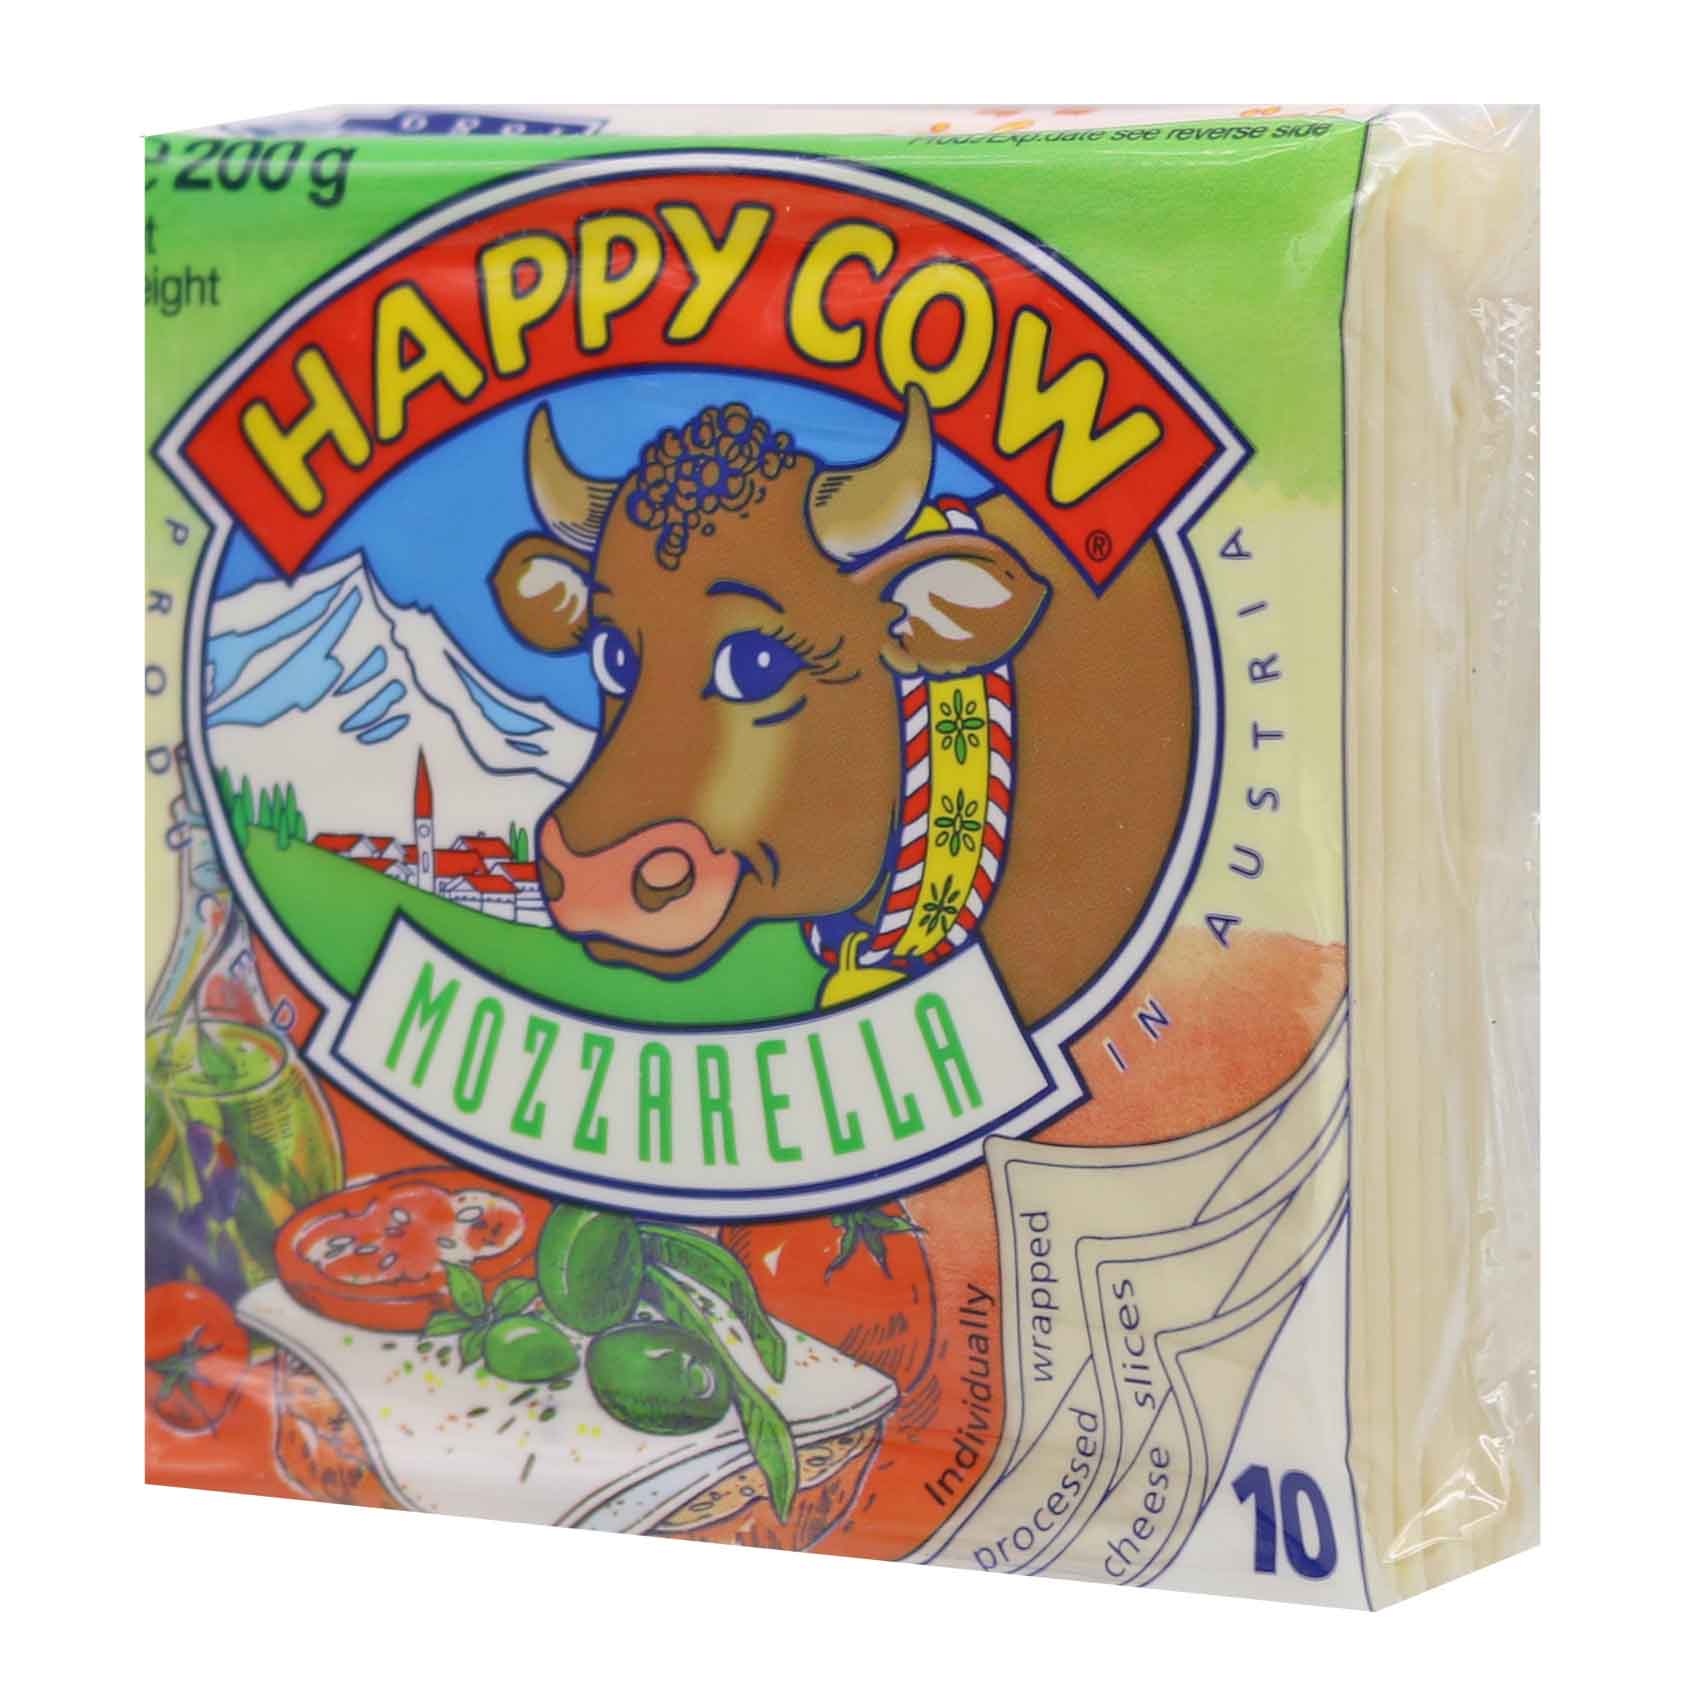 Happy Cow 10 Slices Mozzarella 200G